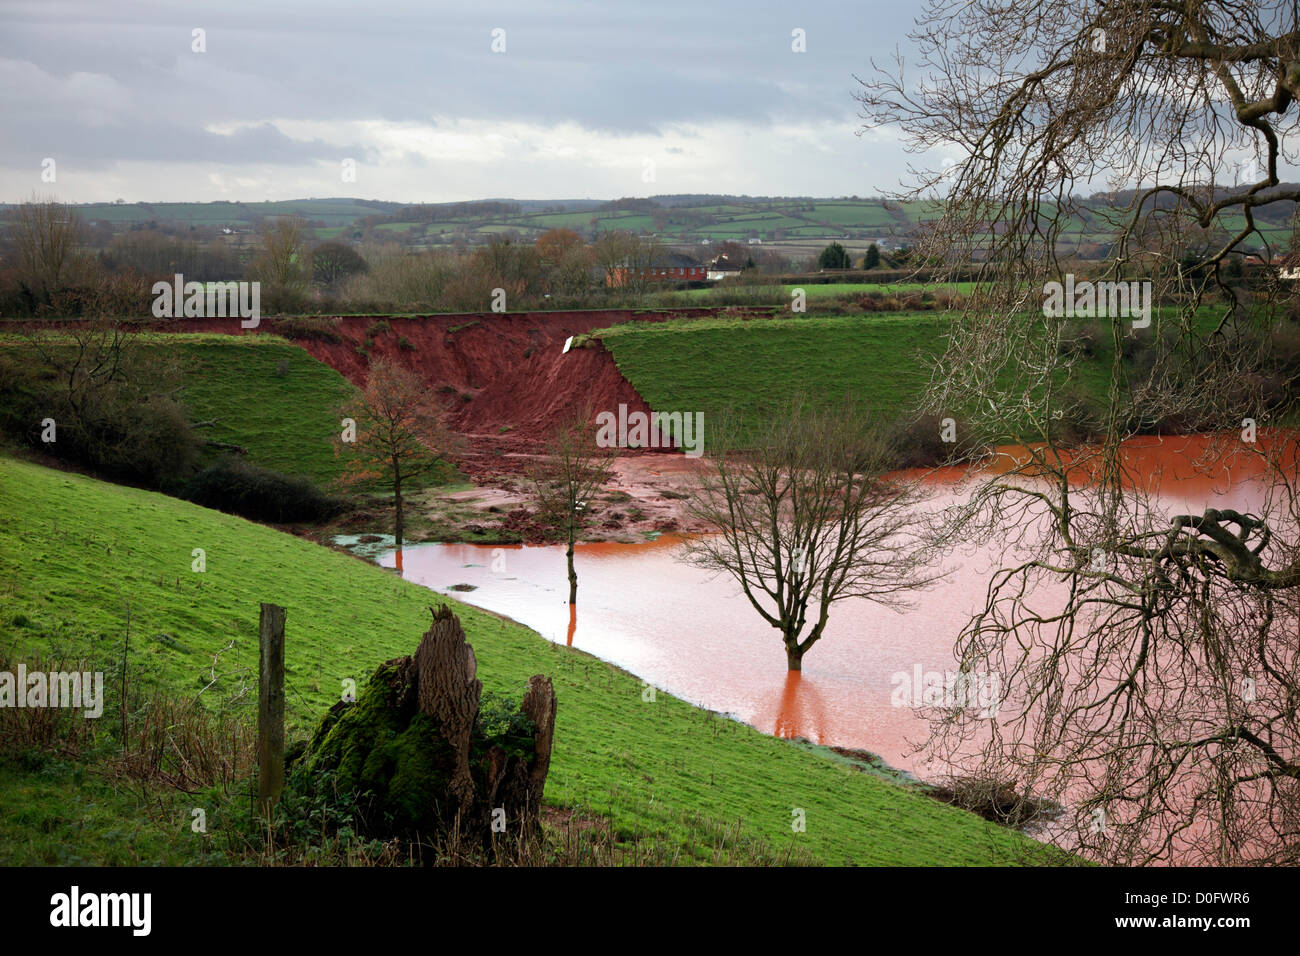 Halberton, Tiverton, Devon, UK. 25 novembre 2012. La brèche dans le Grand Canal de l'Ouest a provoqué de fortes pluies. Banque D'Images